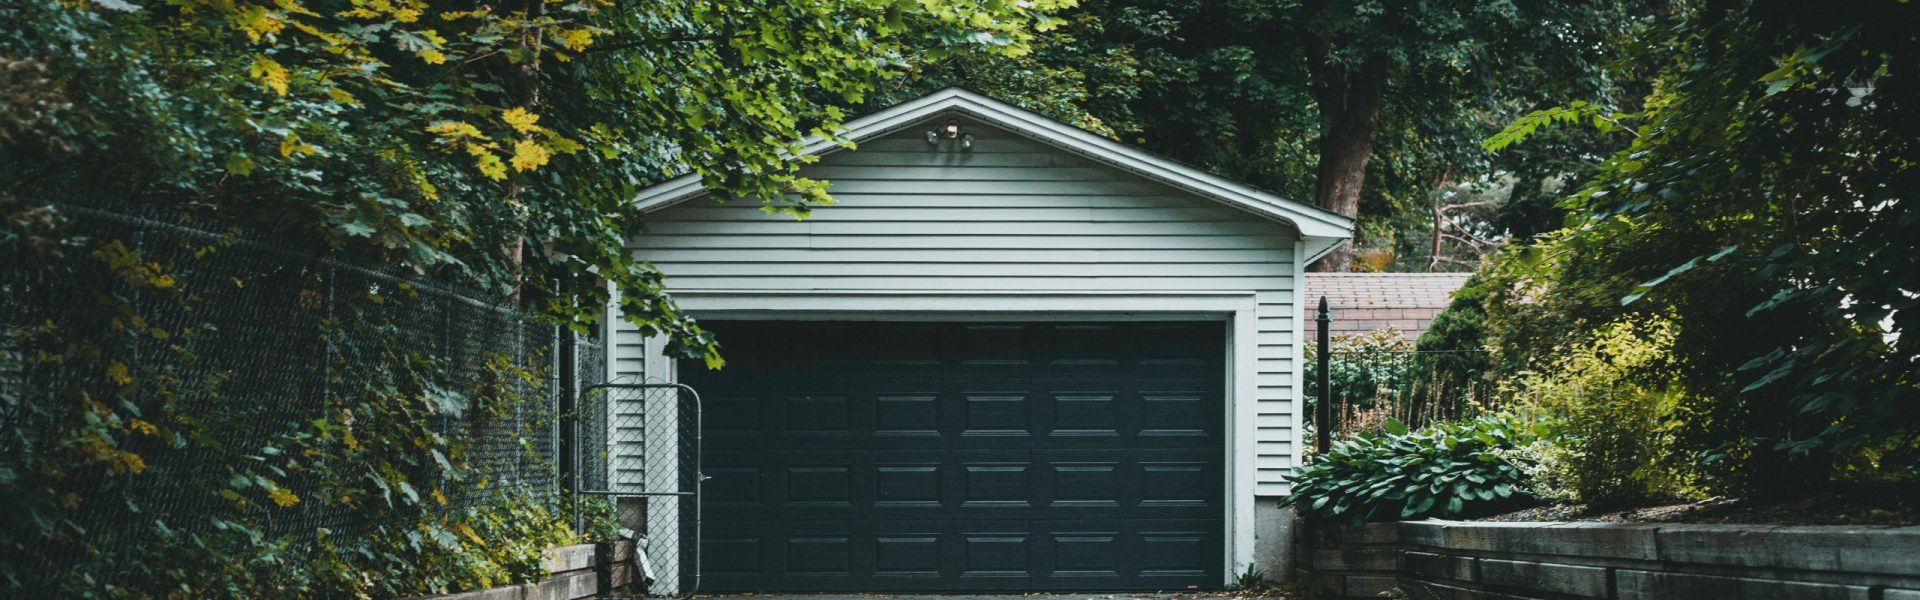 garage door home